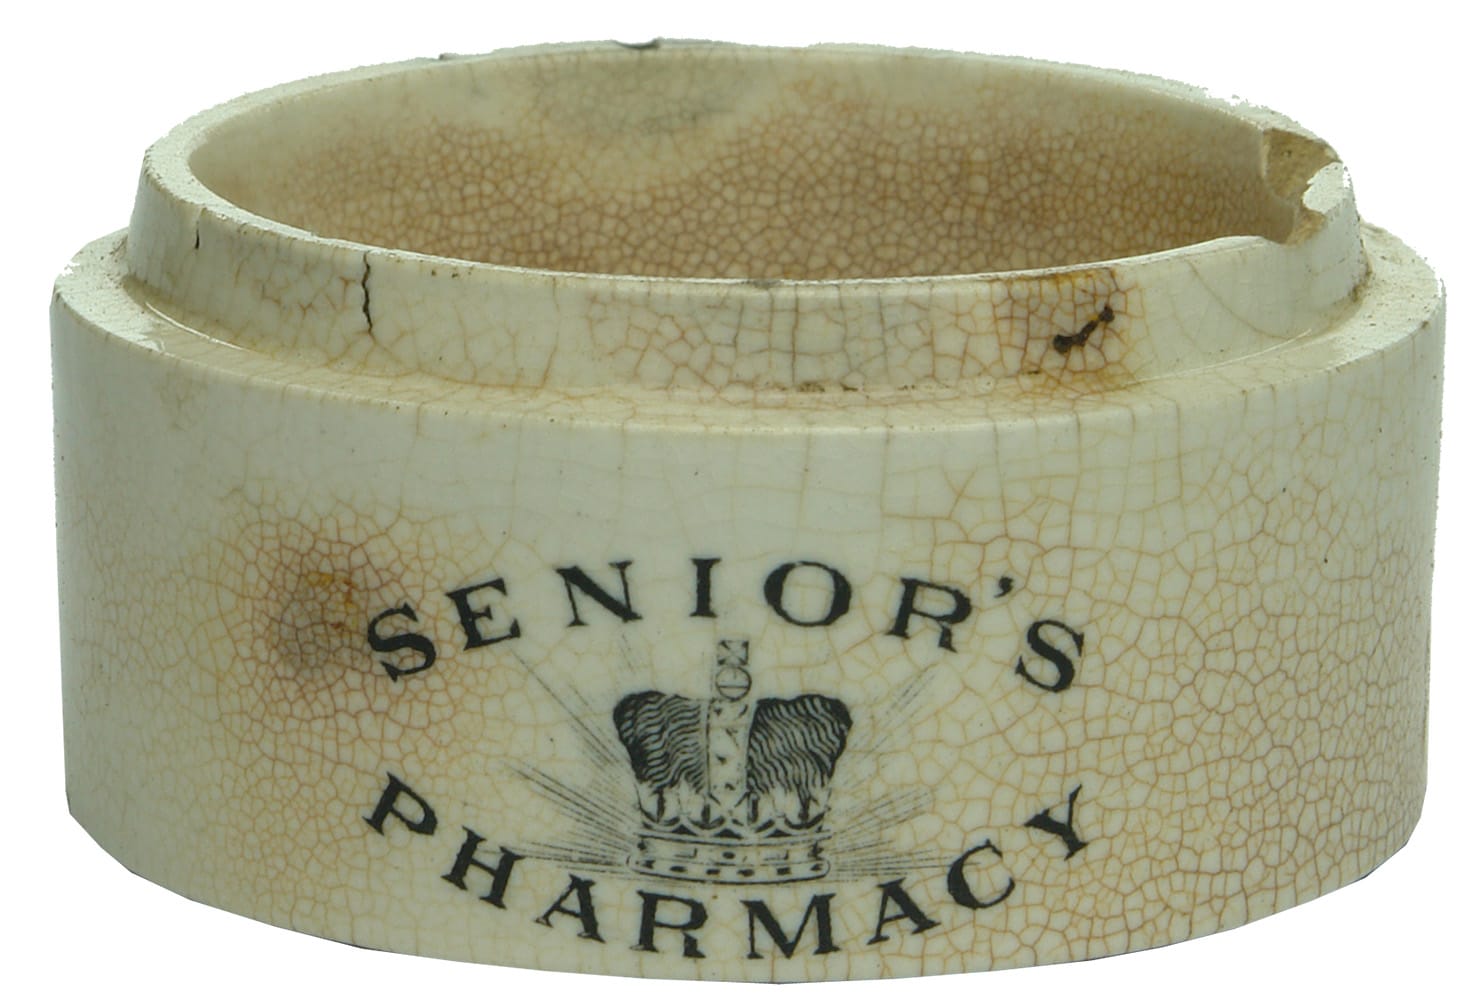 Senior's Pharmacy Crown Ceramic Pot